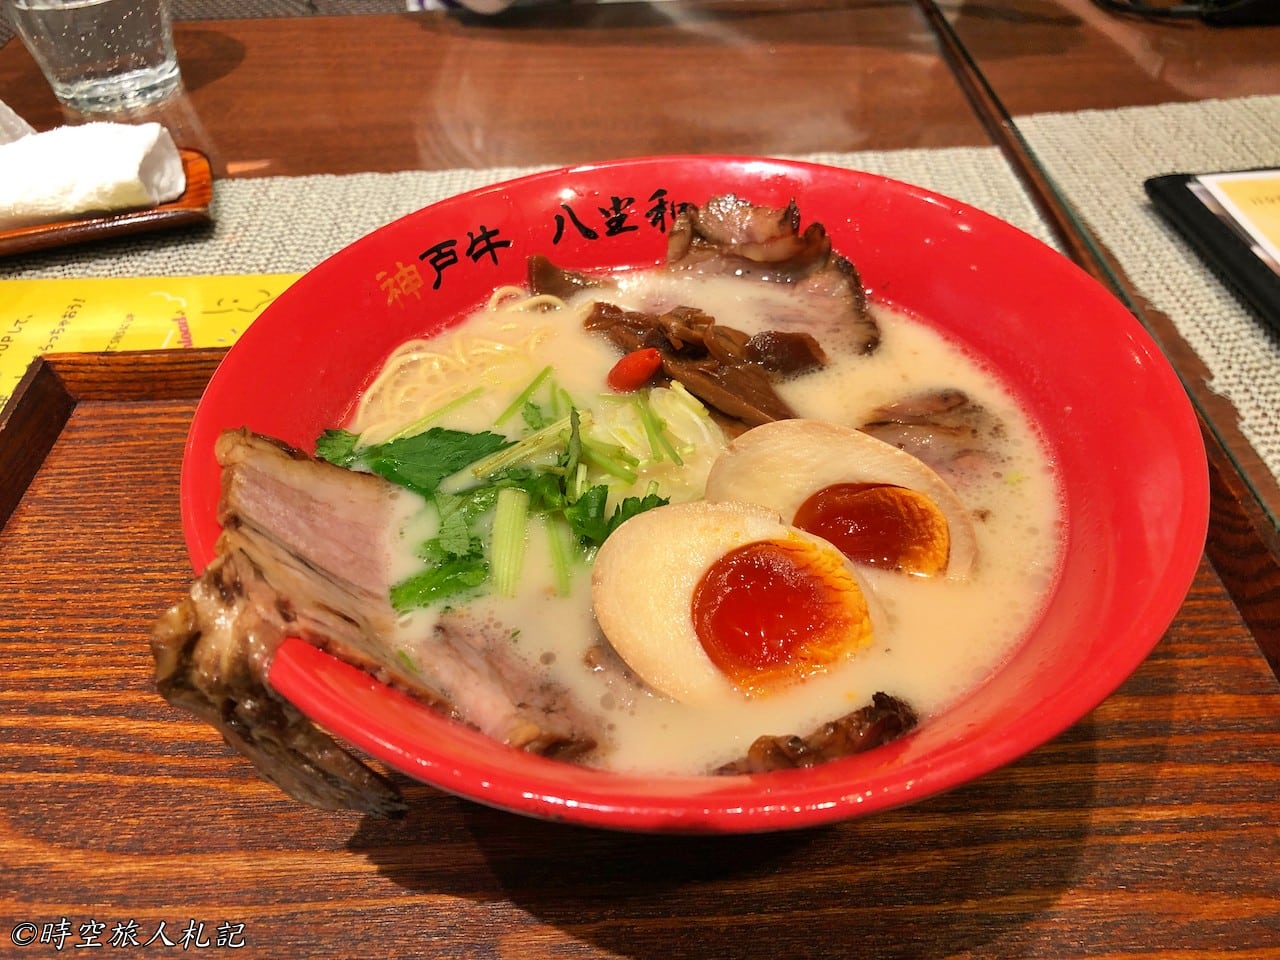 神戶美食,kobe-food,日本神戶美食 44